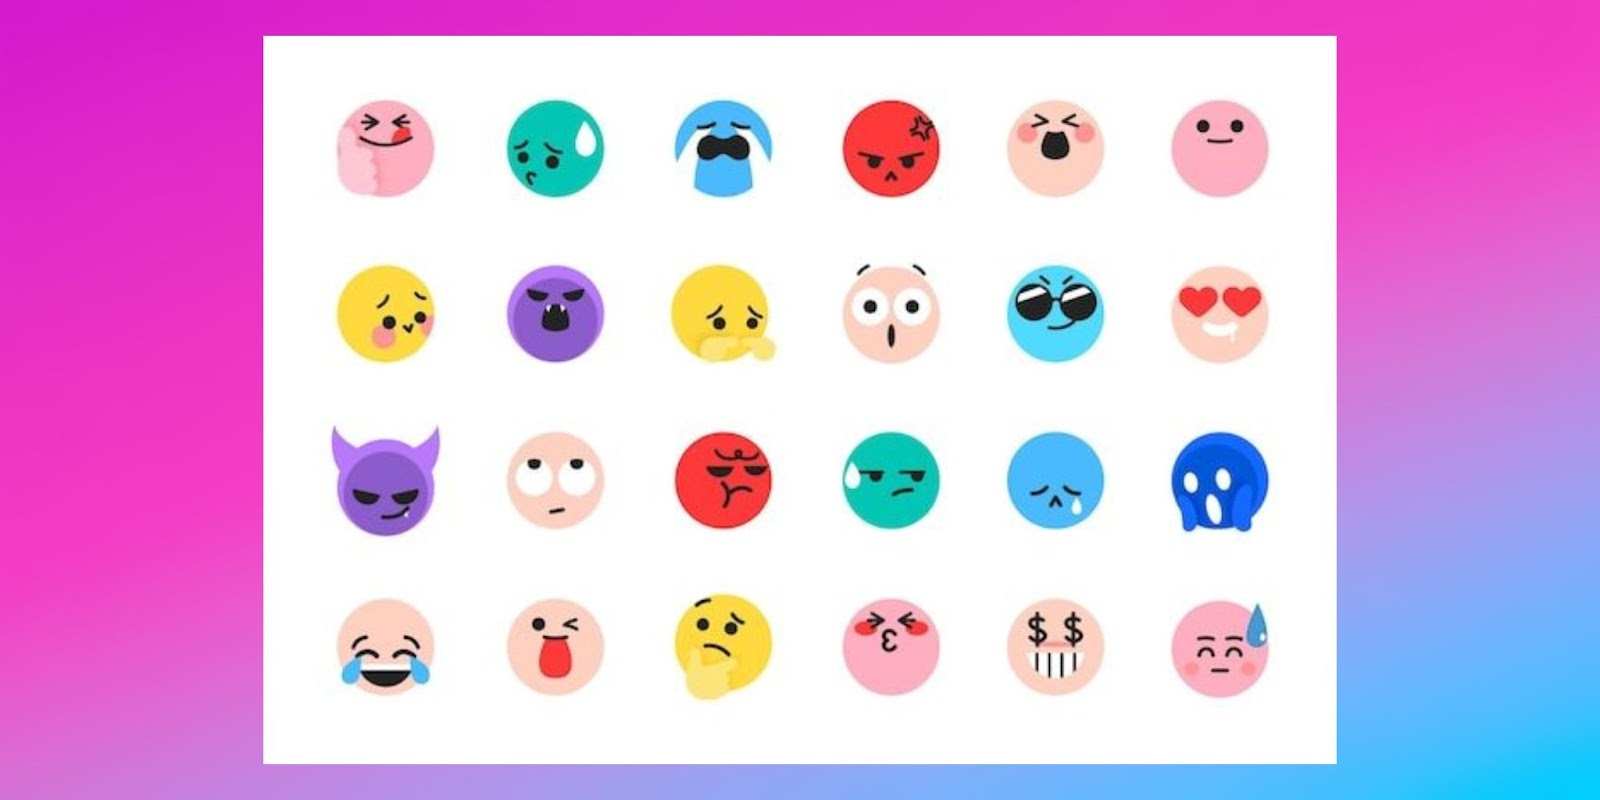 How to Unlock and Use TikTok’s Secret Emojis